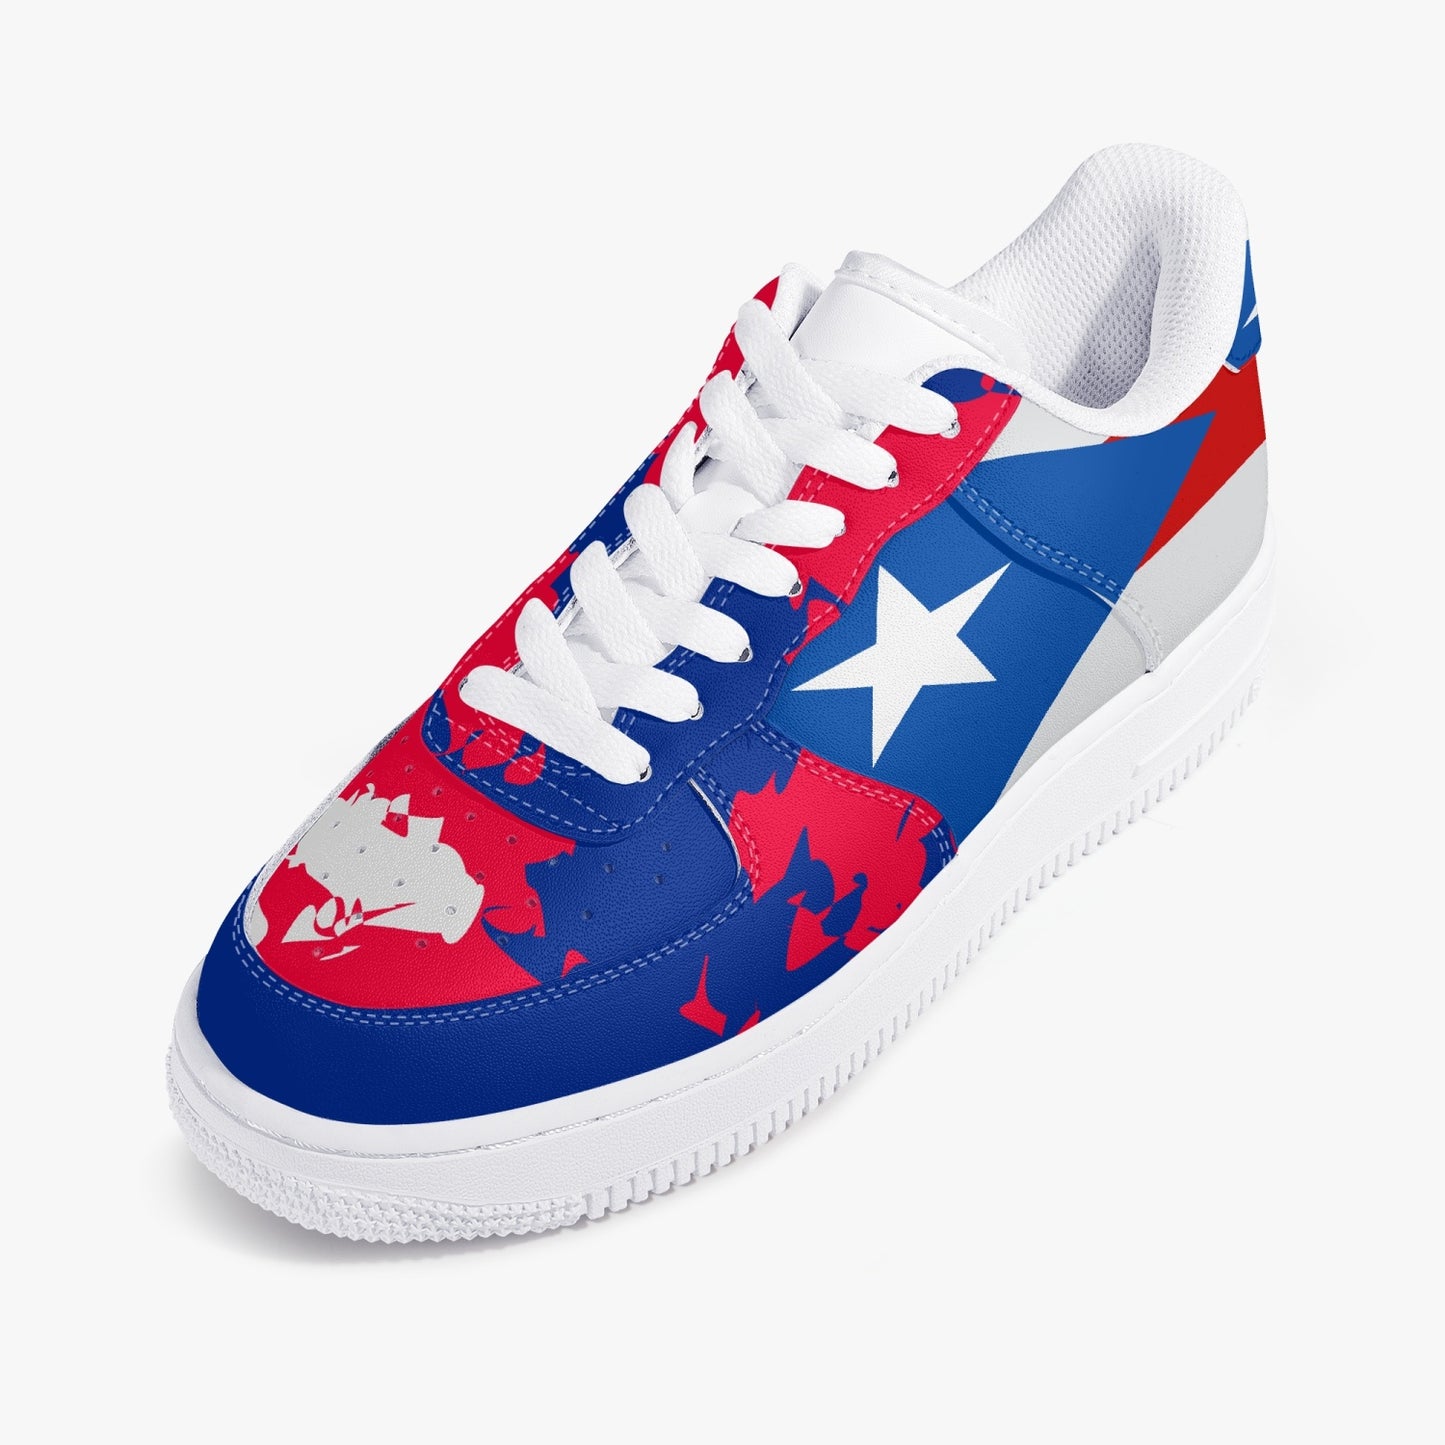 1Tweezy Air Puerto Rico Leather Sneakers